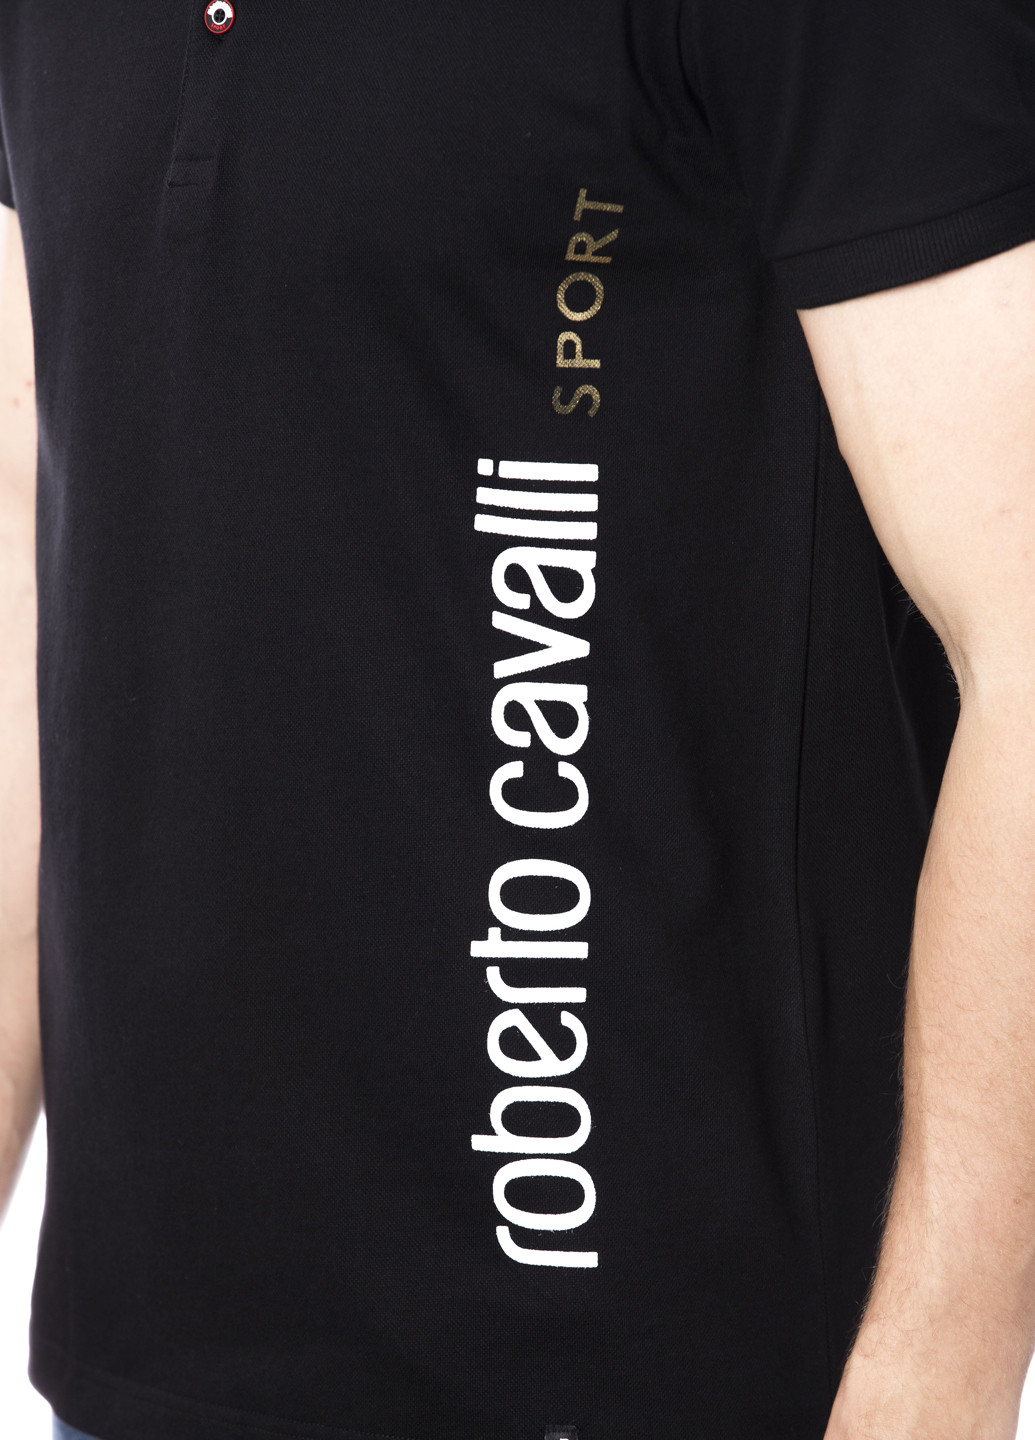 Черная футболка-поло для мужчин Roberto Cavalli с логотипом